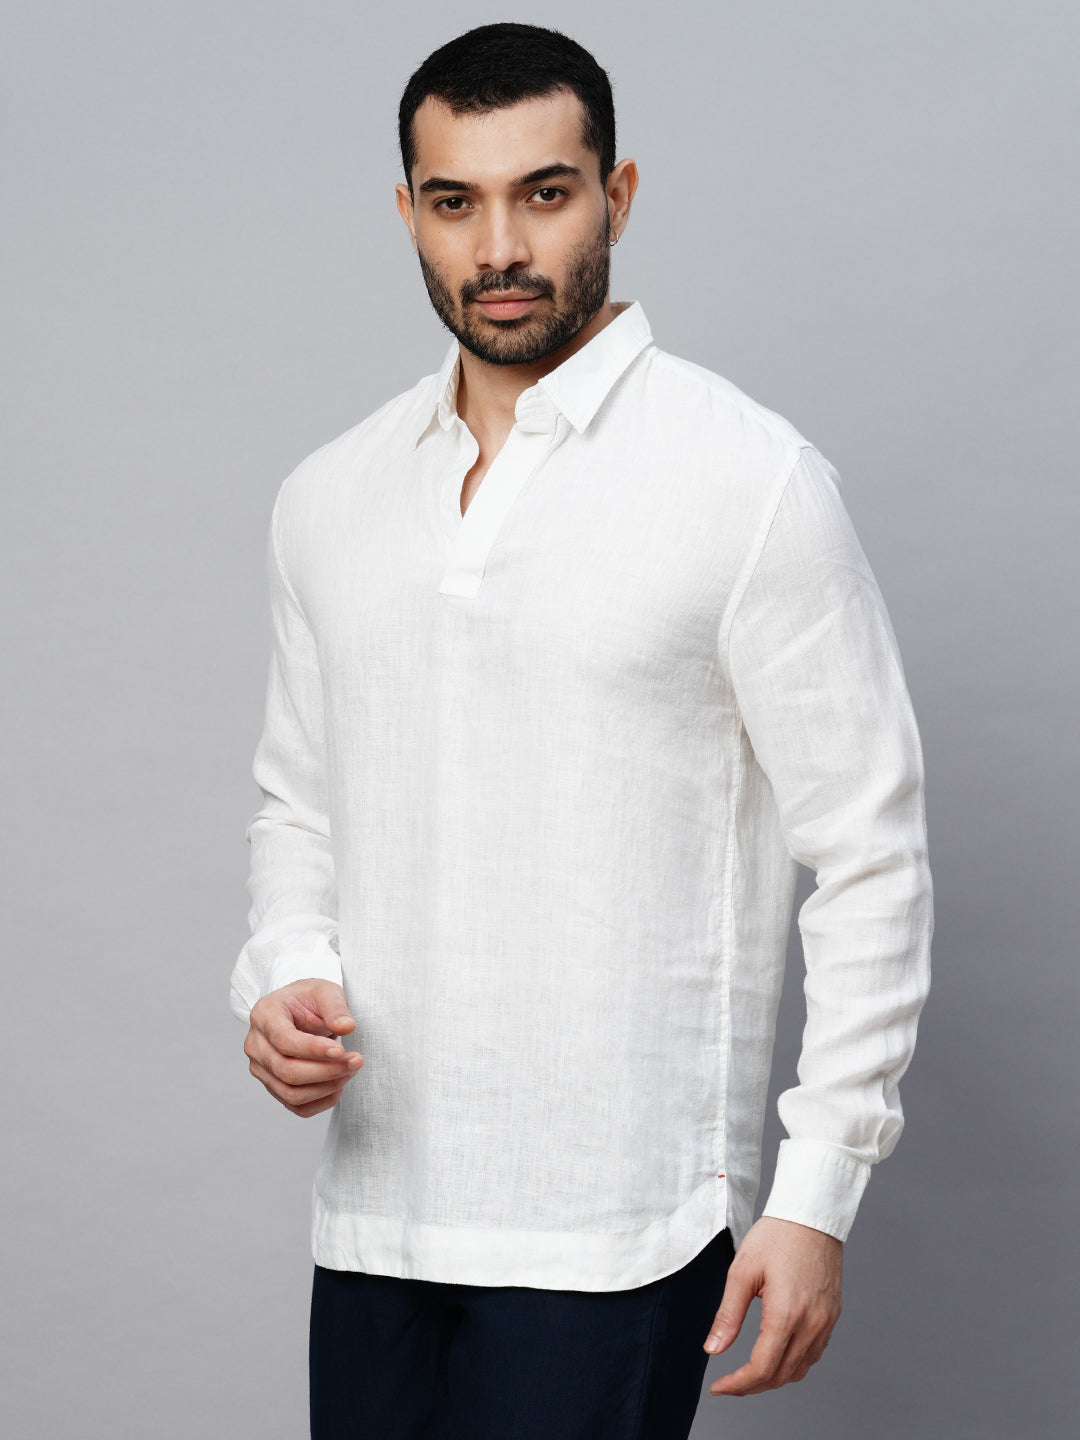 Bourhaan Men's Regular Fit Long Sleeve 100% Linen Shirt - White